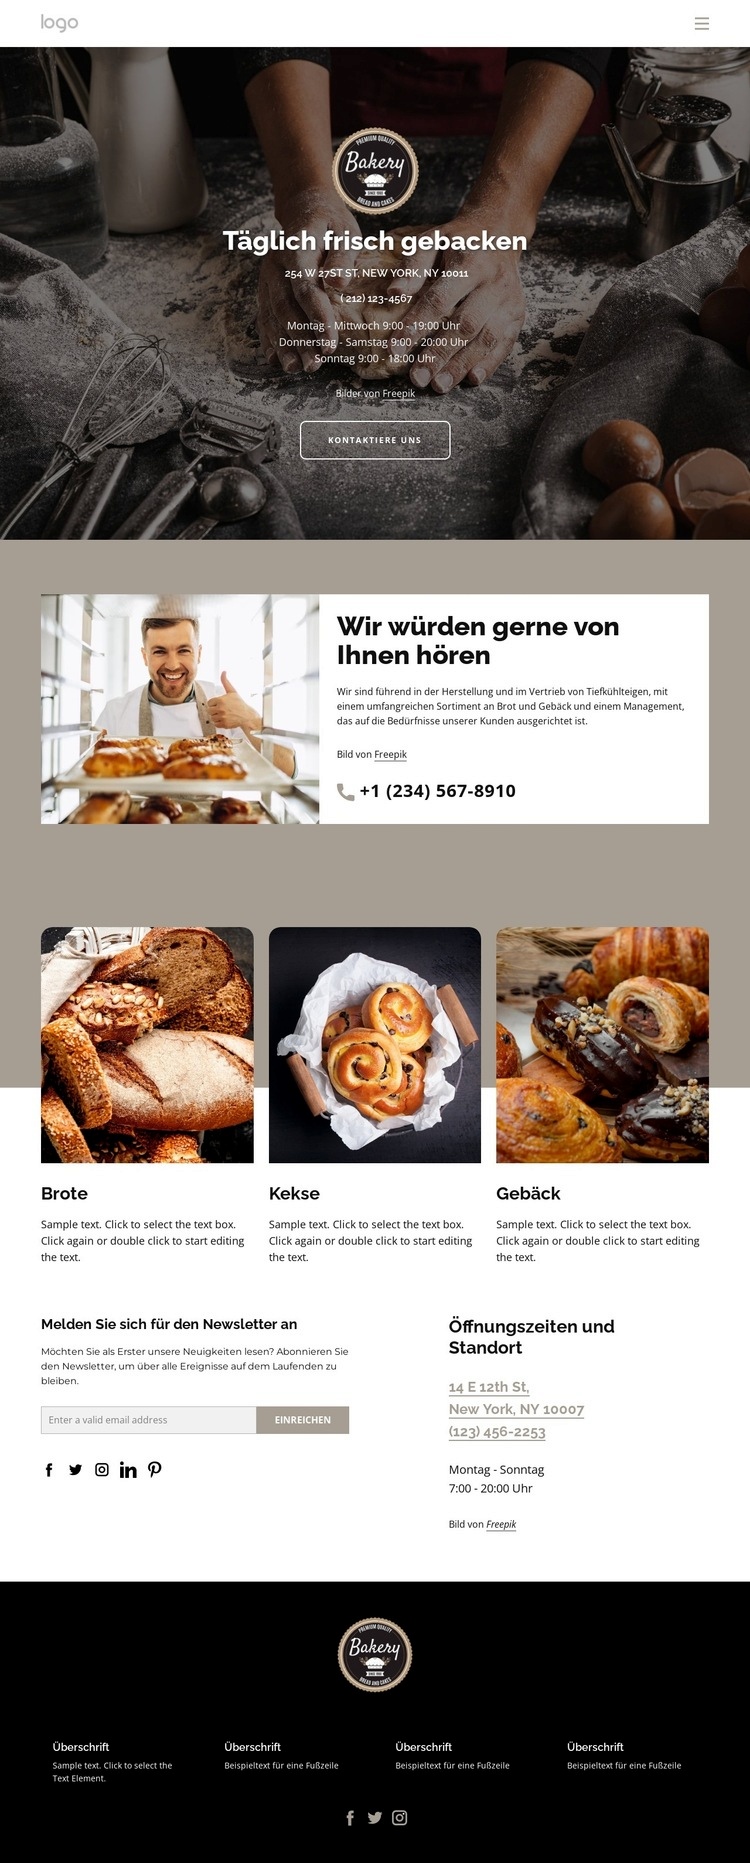 Täglich frisches Brot gebacken Website-Modell